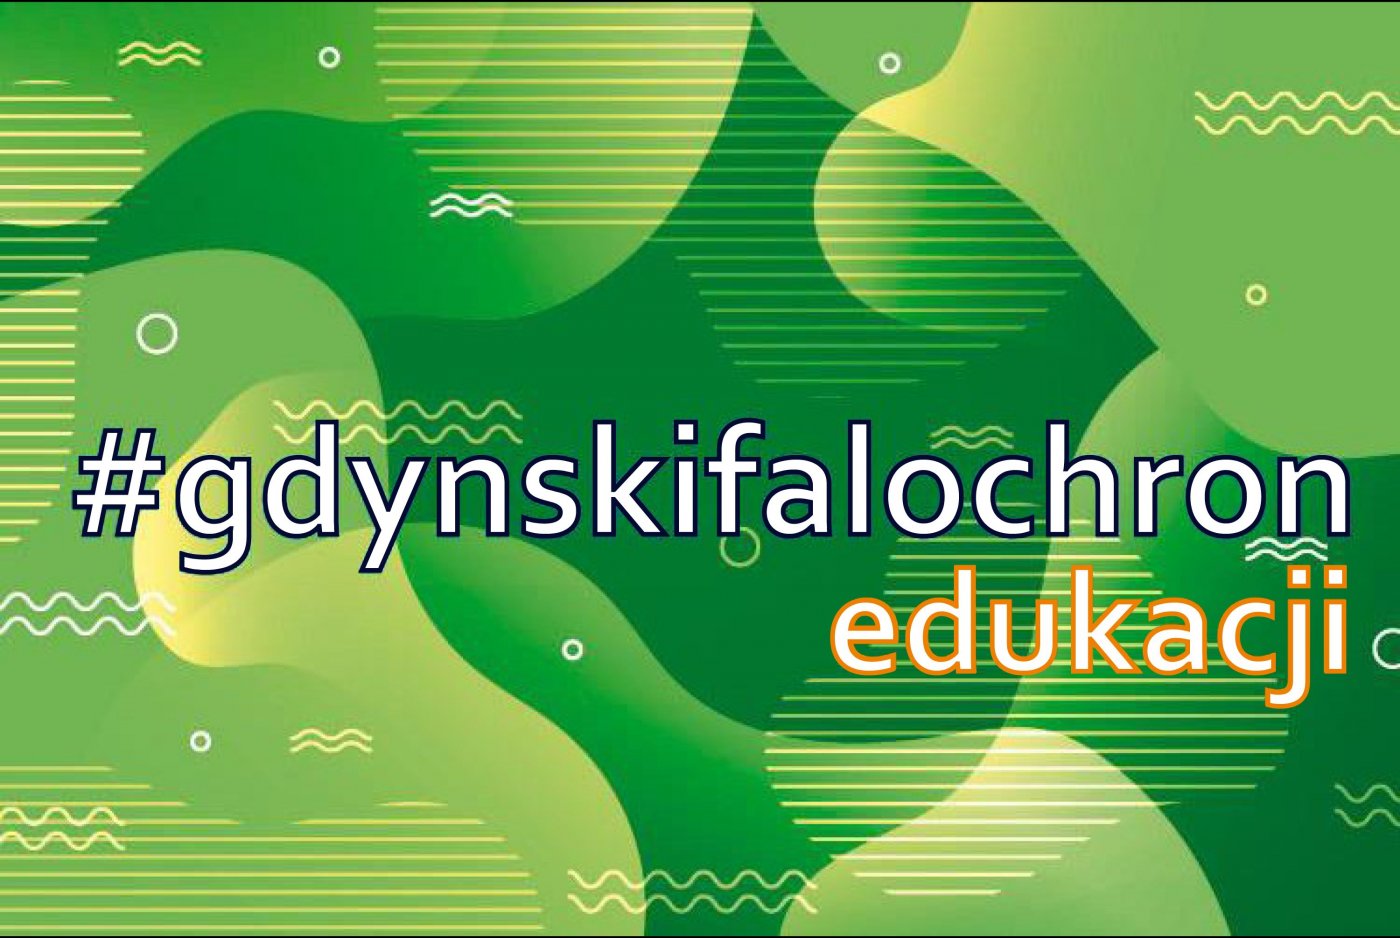 Gdyński Falochron dla Edukacji to wsparcie dla placówek niepublicznych oraz innych podmiotów i osób prowadzących działalność gospodarczą w obszarze szeroko pojętej edukacji i usług opiekuńczych